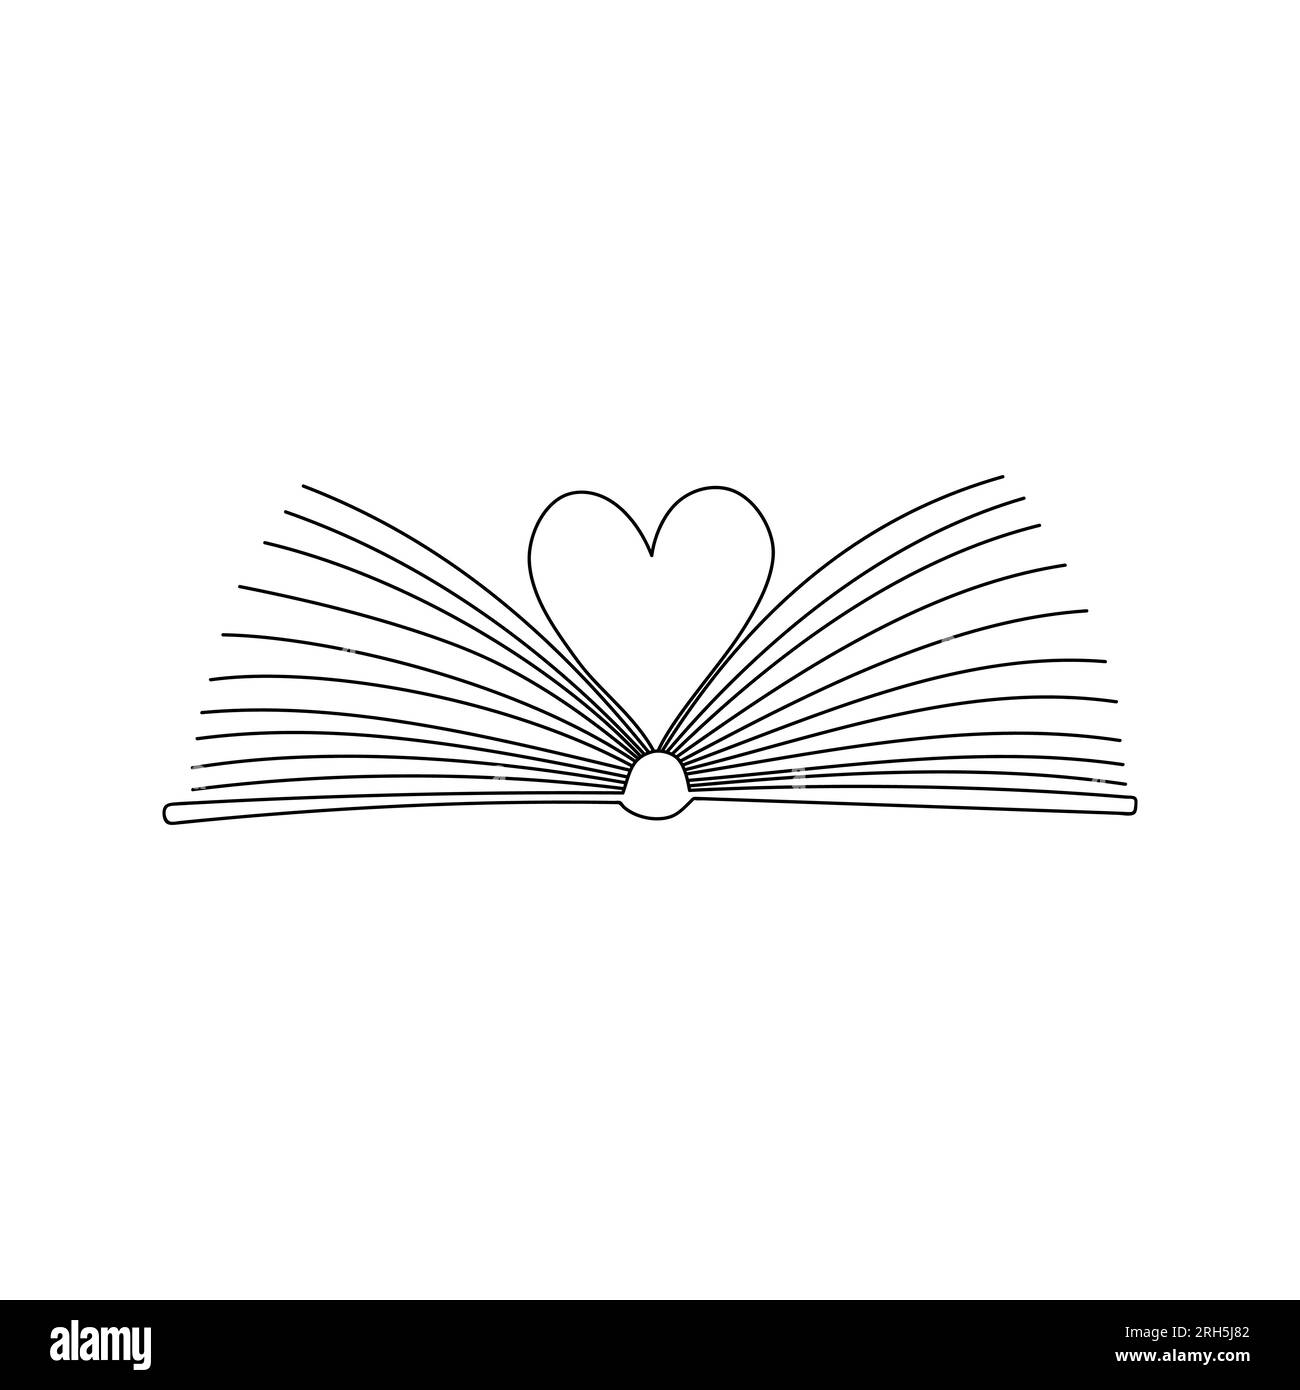 Esquissez un livre ouvert avec des pages pliées en forme de coeur. Symbole de la connaissance, de l'apprentissage, de la lecture, de la littérature. Un concept pour les amateurs de livres. Dessin à la main Illustration de Vecteur